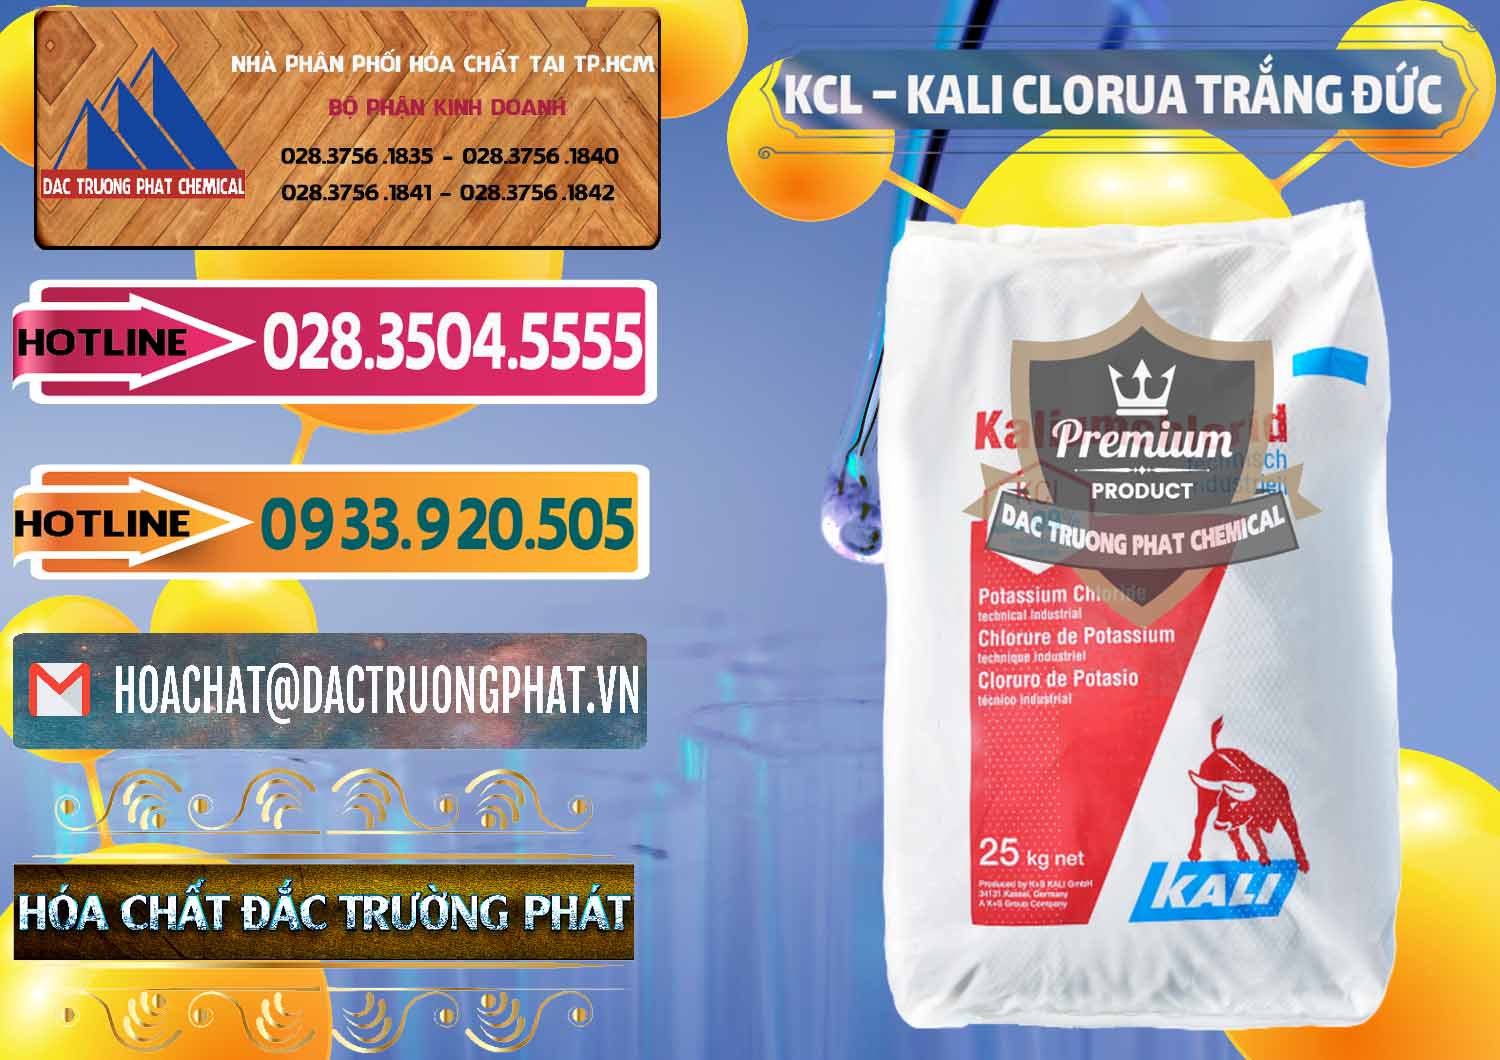 Công ty chuyên bán & phân phối KCL – Kali Clorua Trắng Đức Germany - 0086 - Đơn vị chuyên cung cấp - bán hóa chất tại TP.HCM - dactruongphat.vn